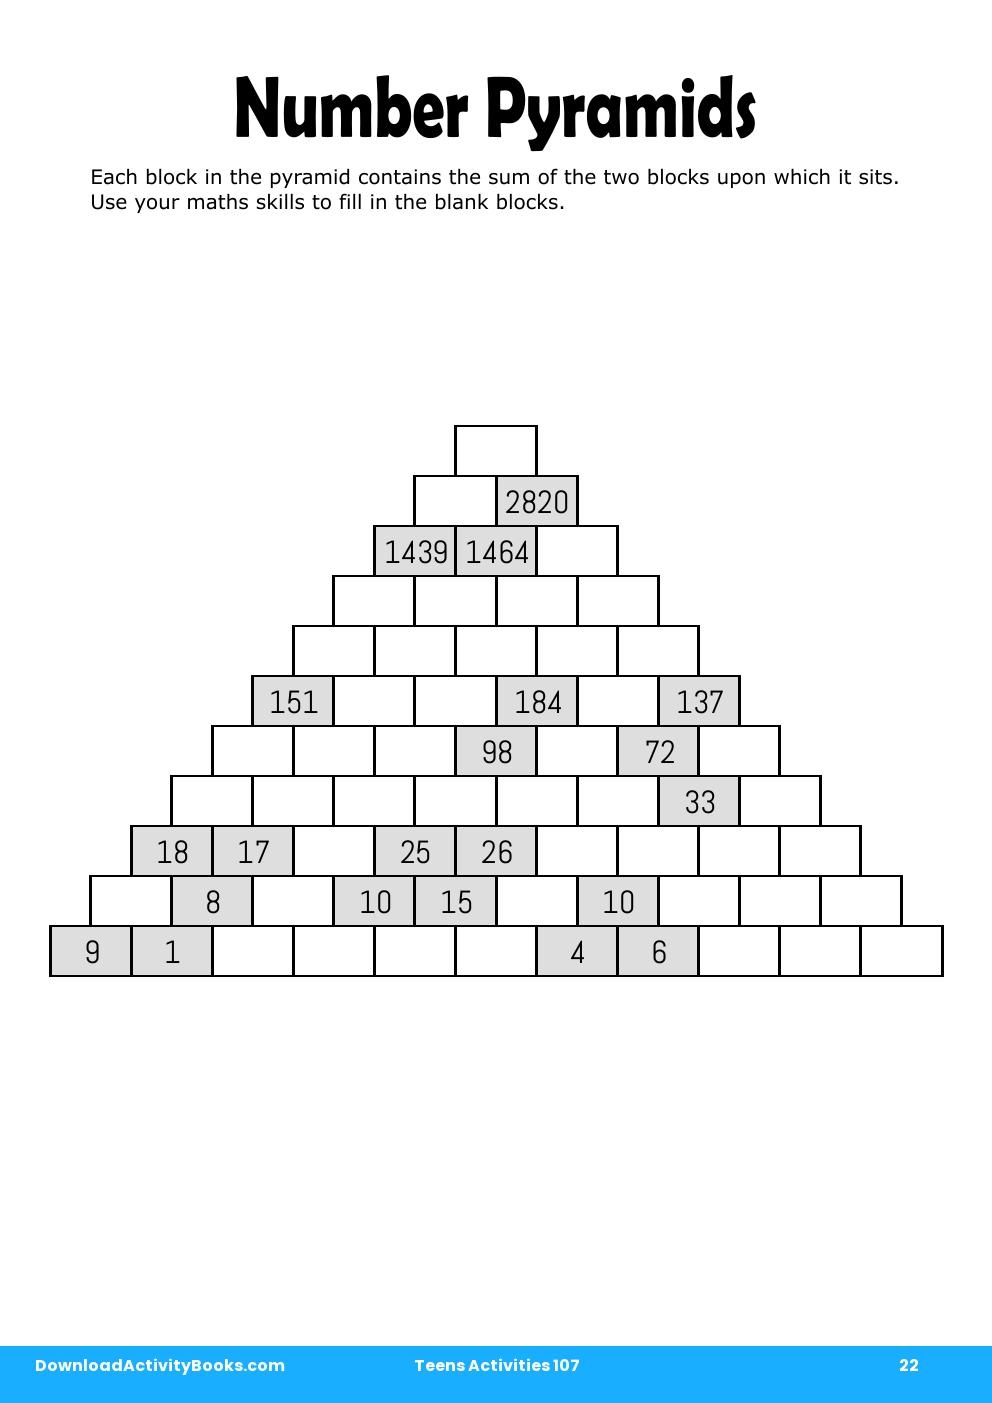 Number Pyramids in Teens Activities 107